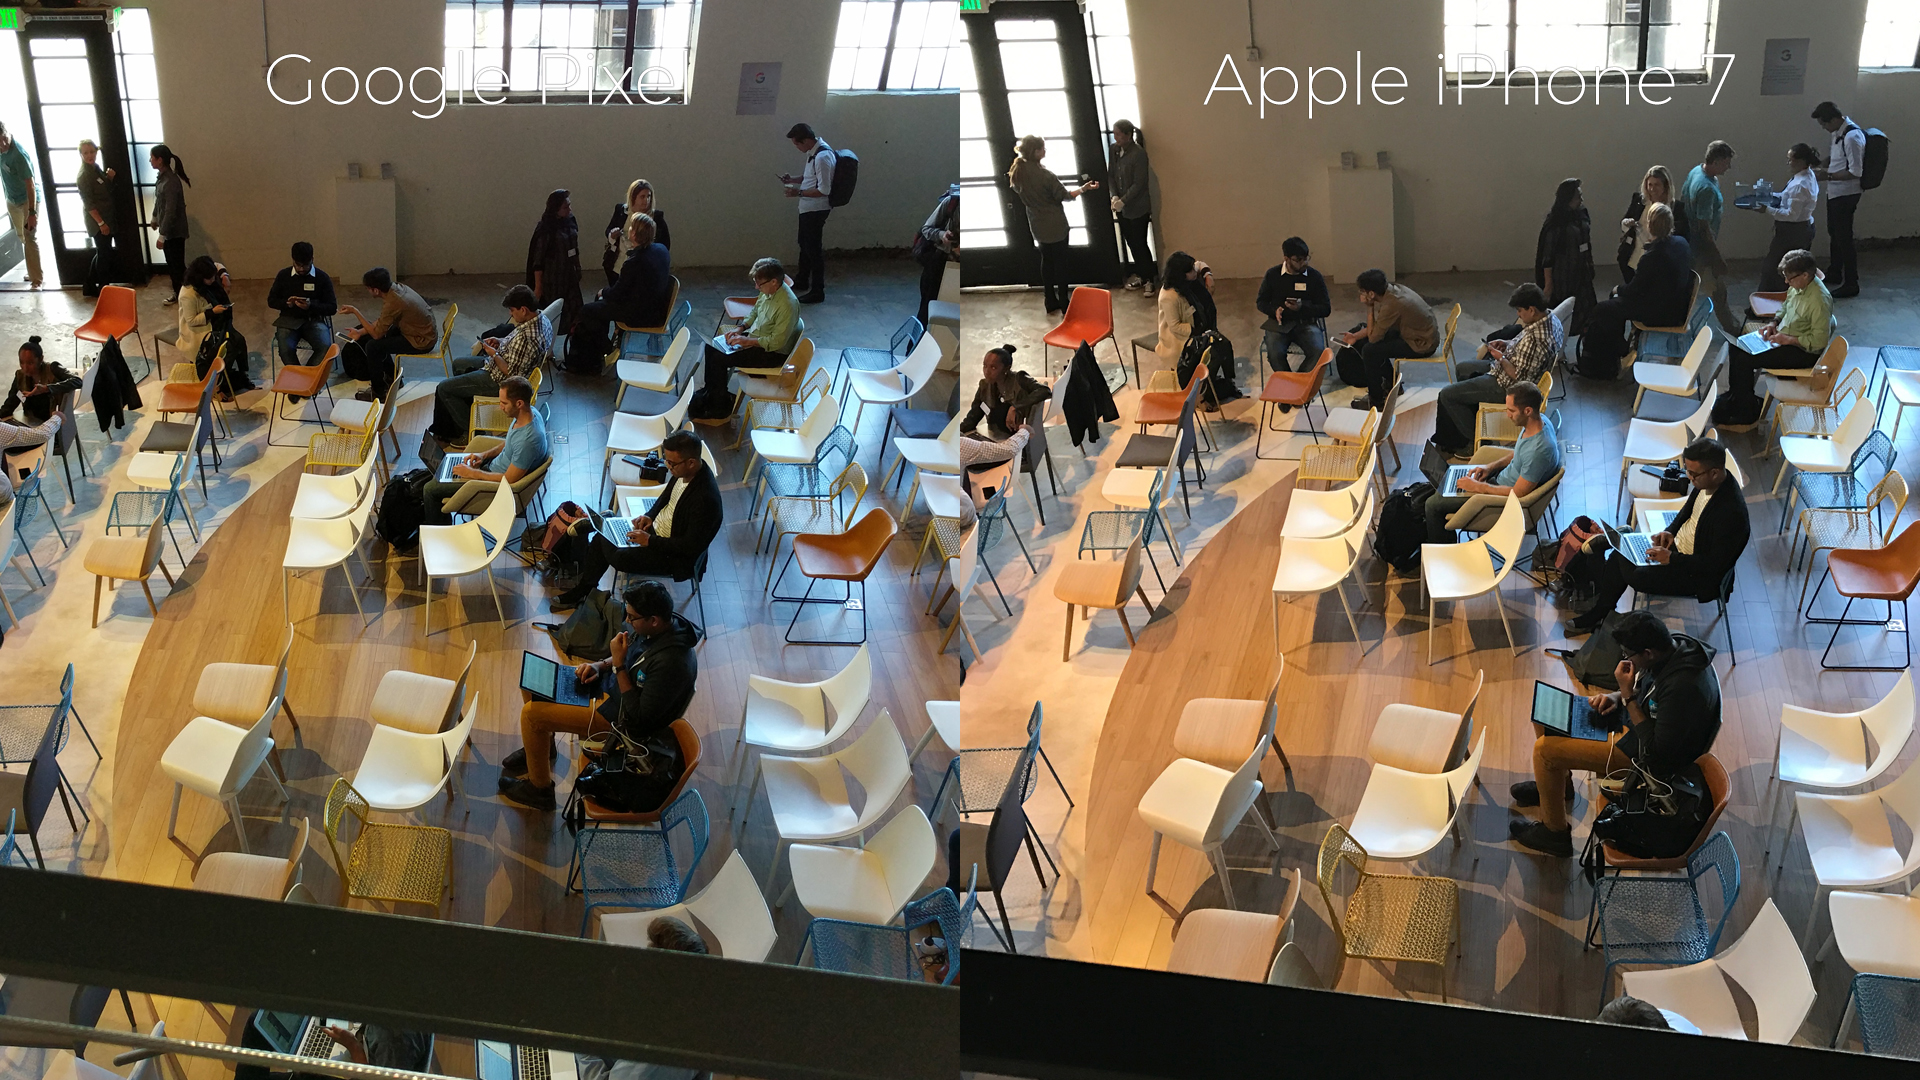 pixel-versus-iphone-7-chairs